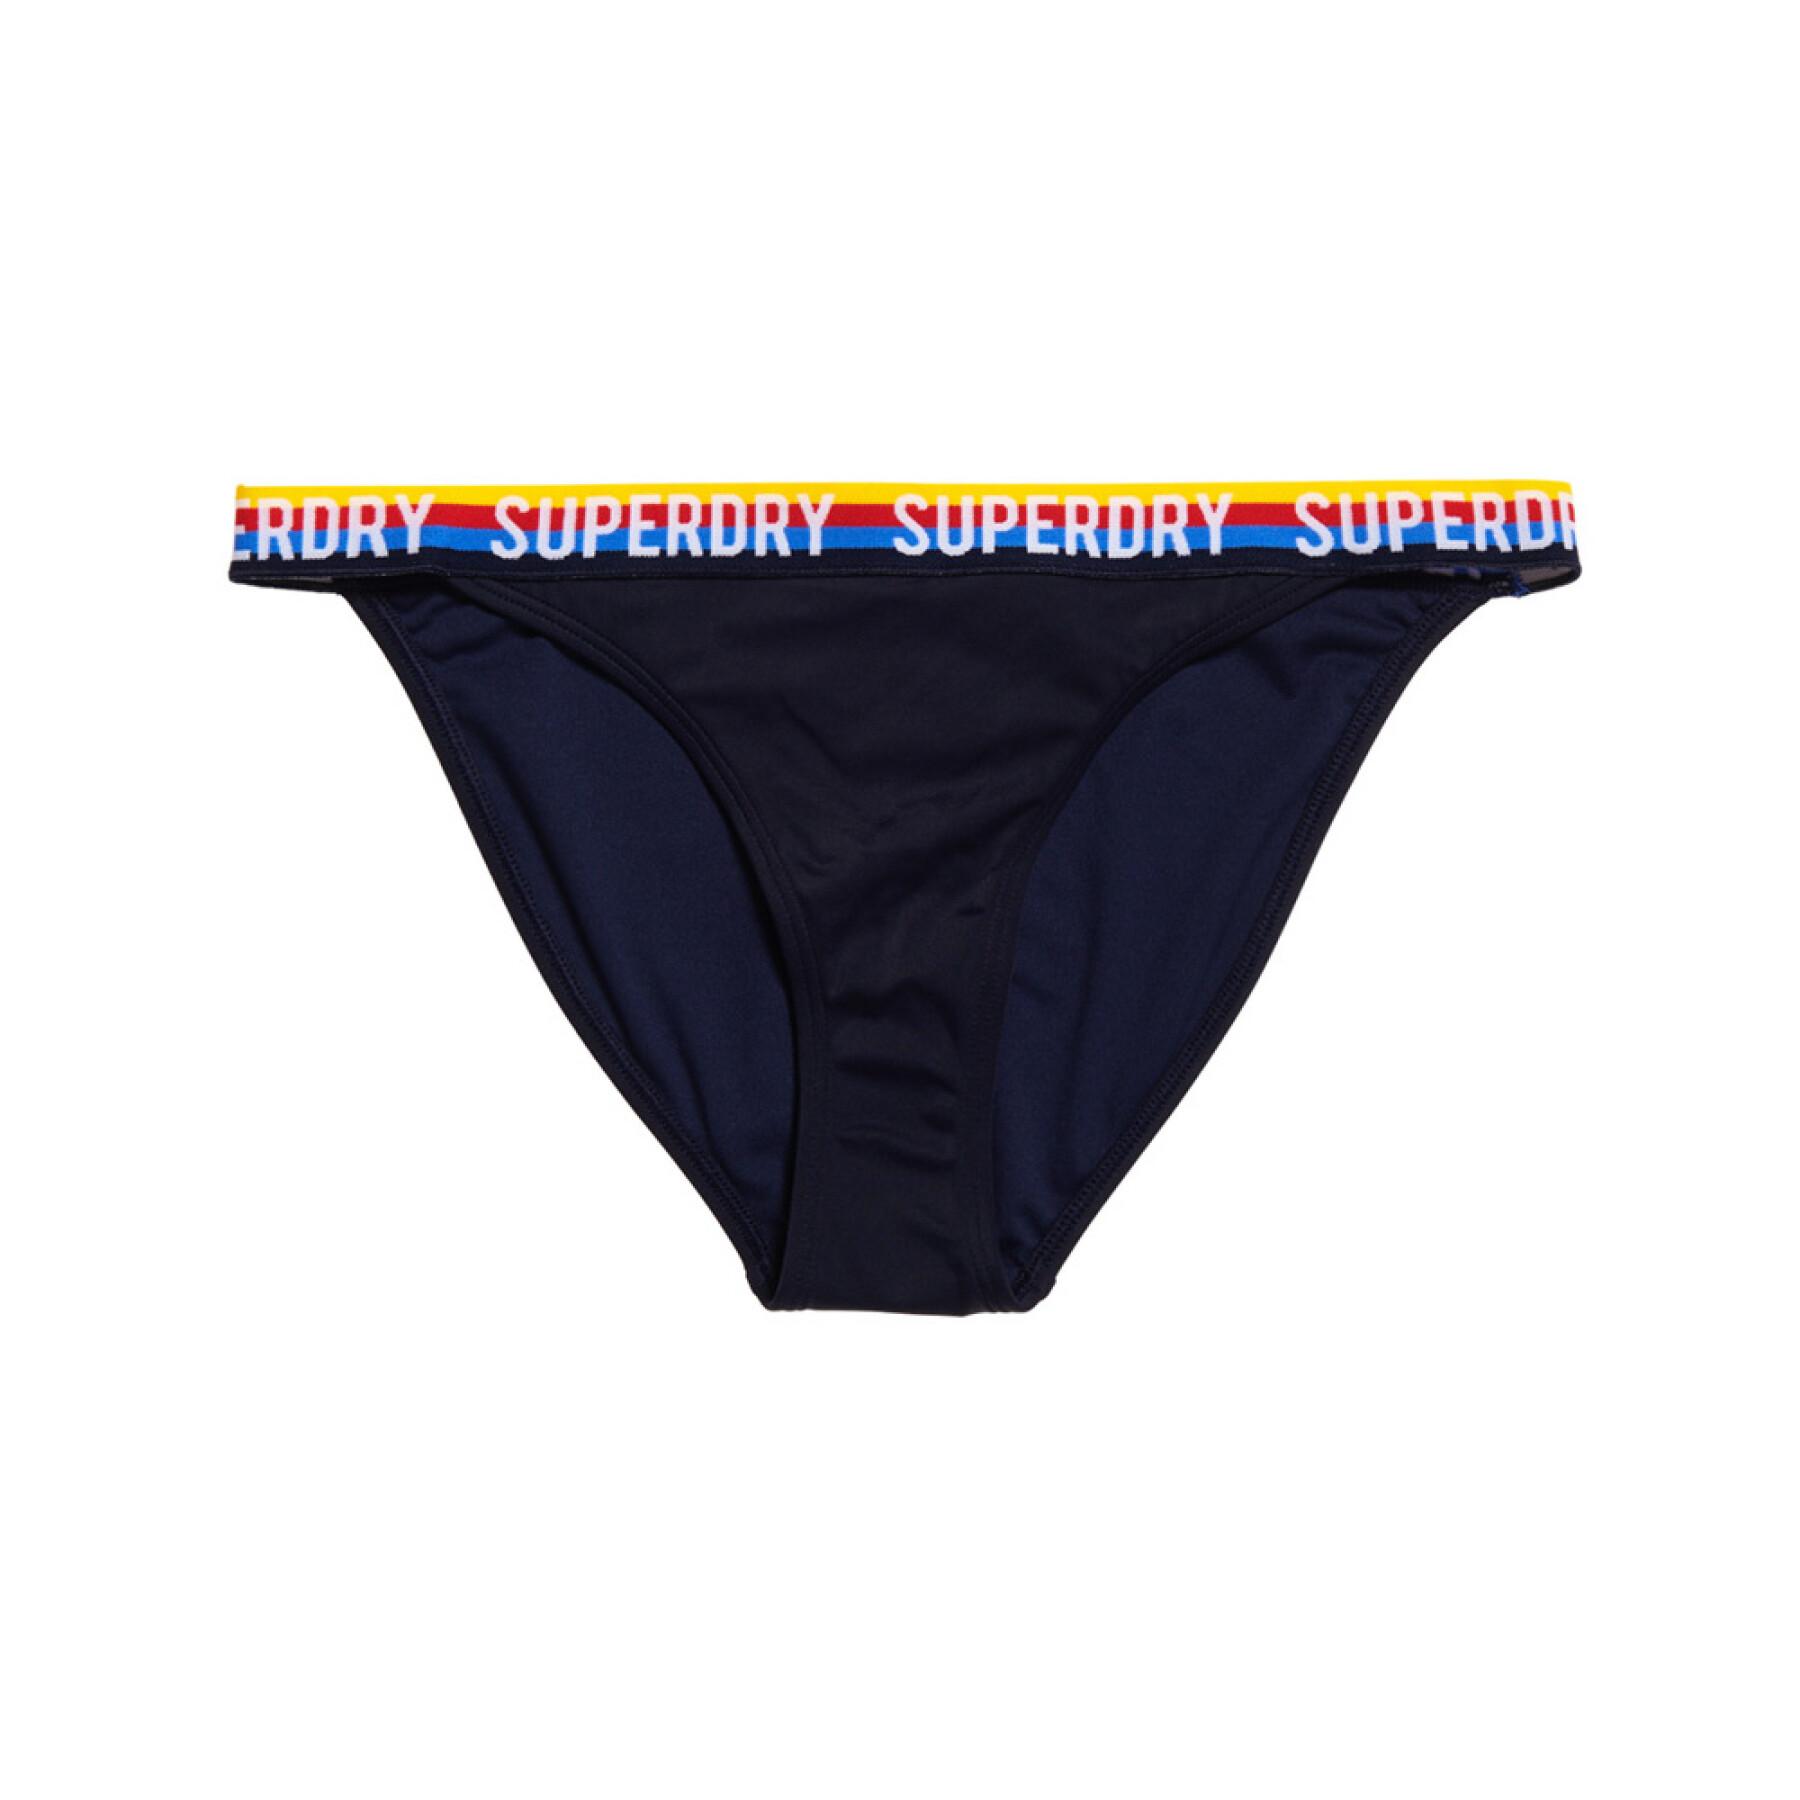 Sydney femme Superdry Bikini Bottom